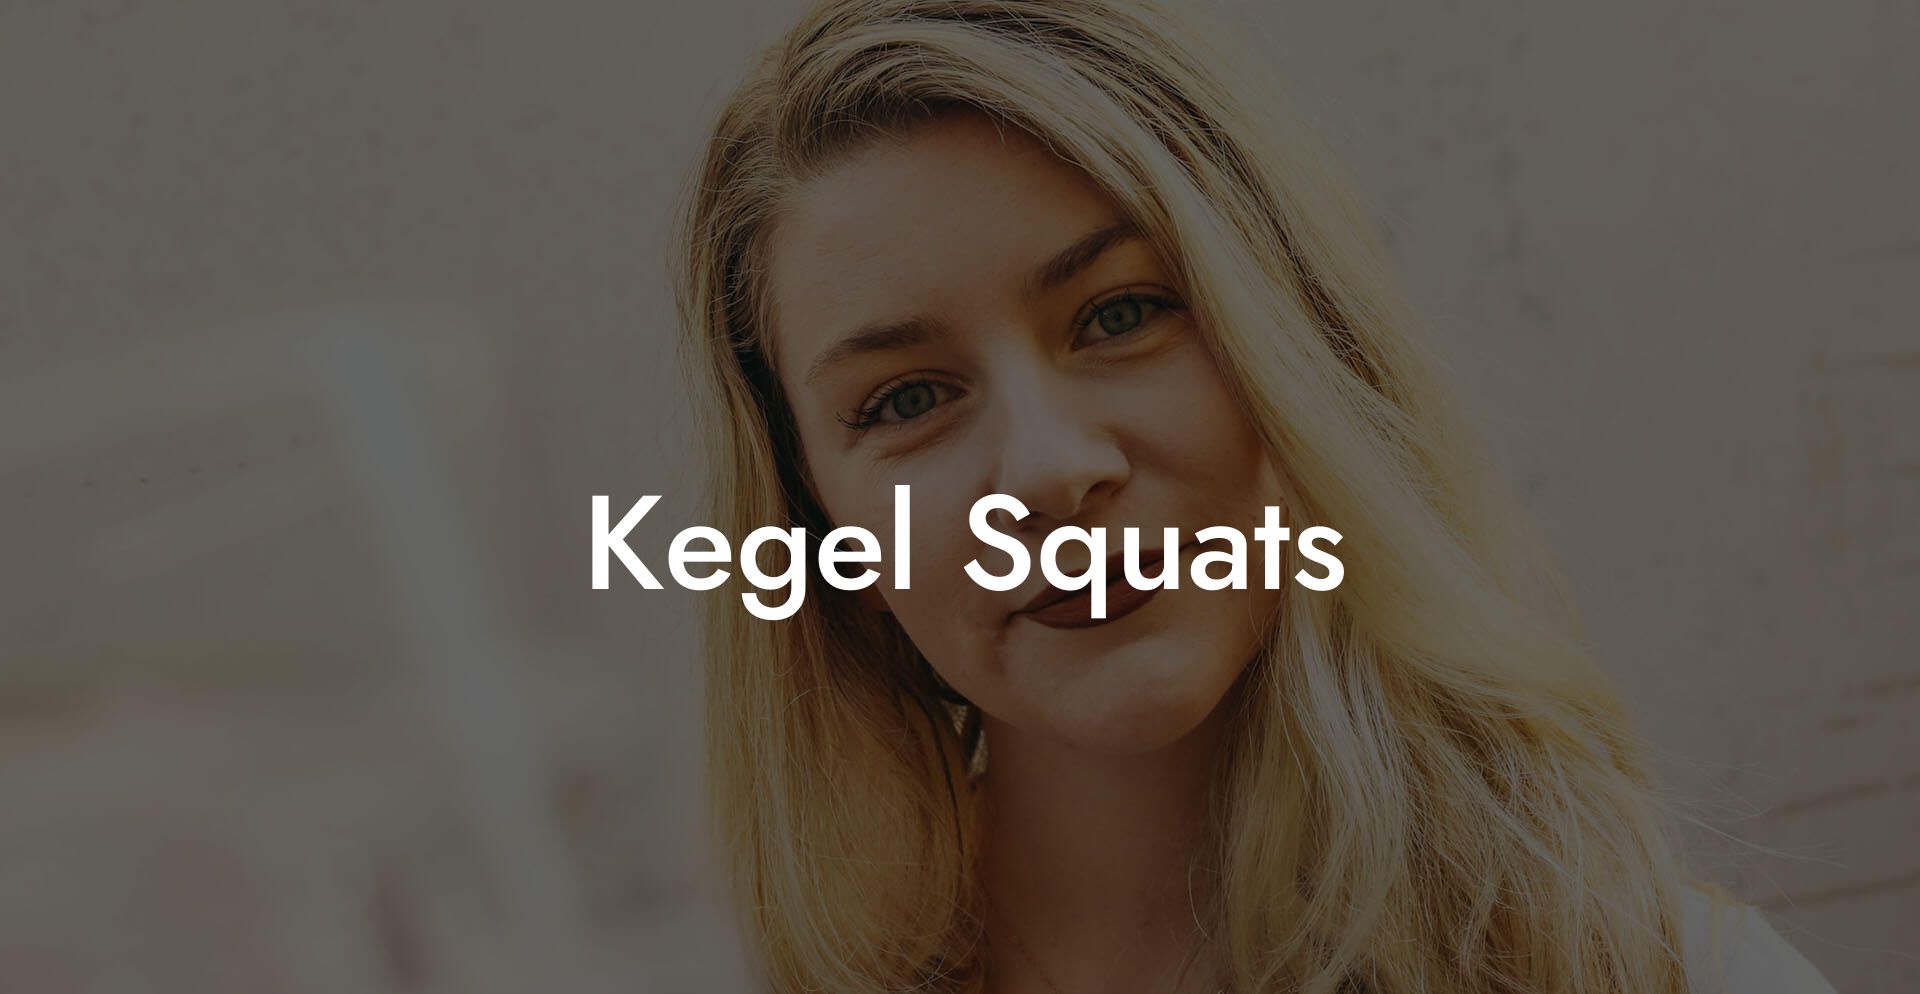 Kegel Squats